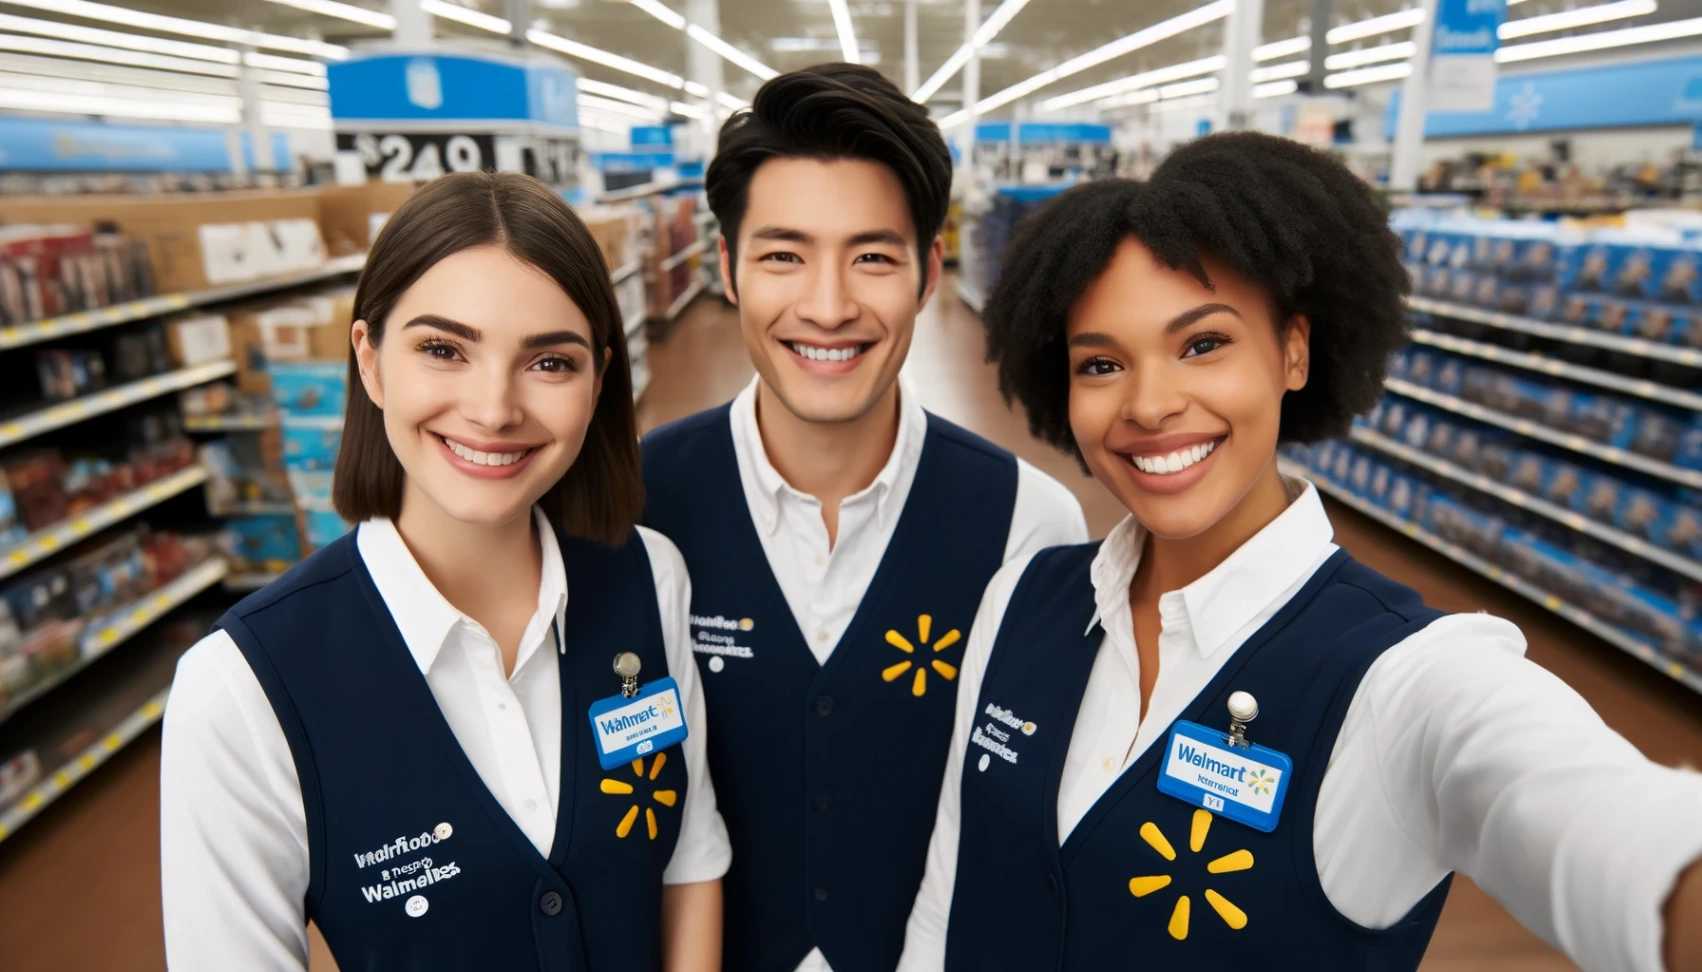 مسار Walmart وظائف: خطوة بخطوة نحو تطبيق ناجح لديك